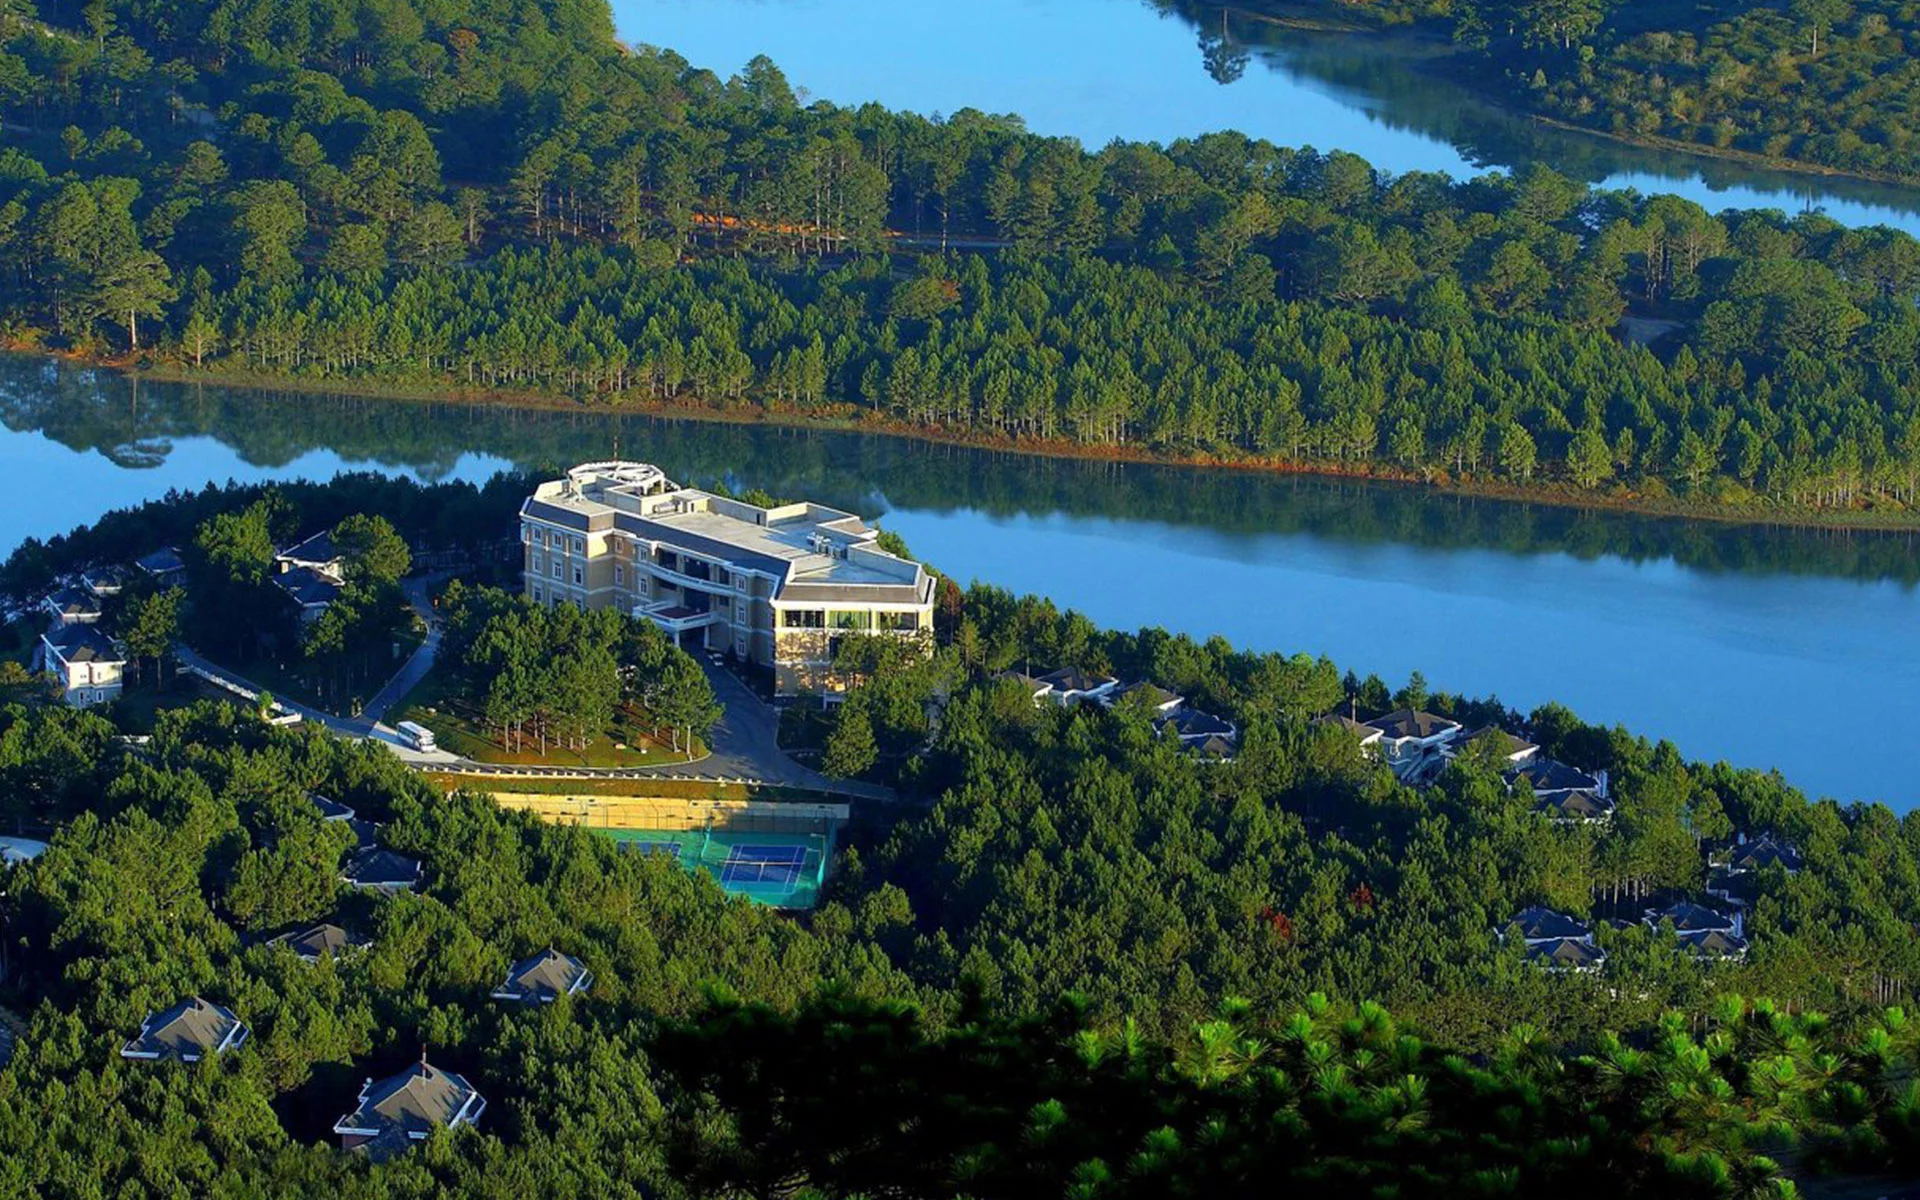 Dalat Edensee Resort & Spa